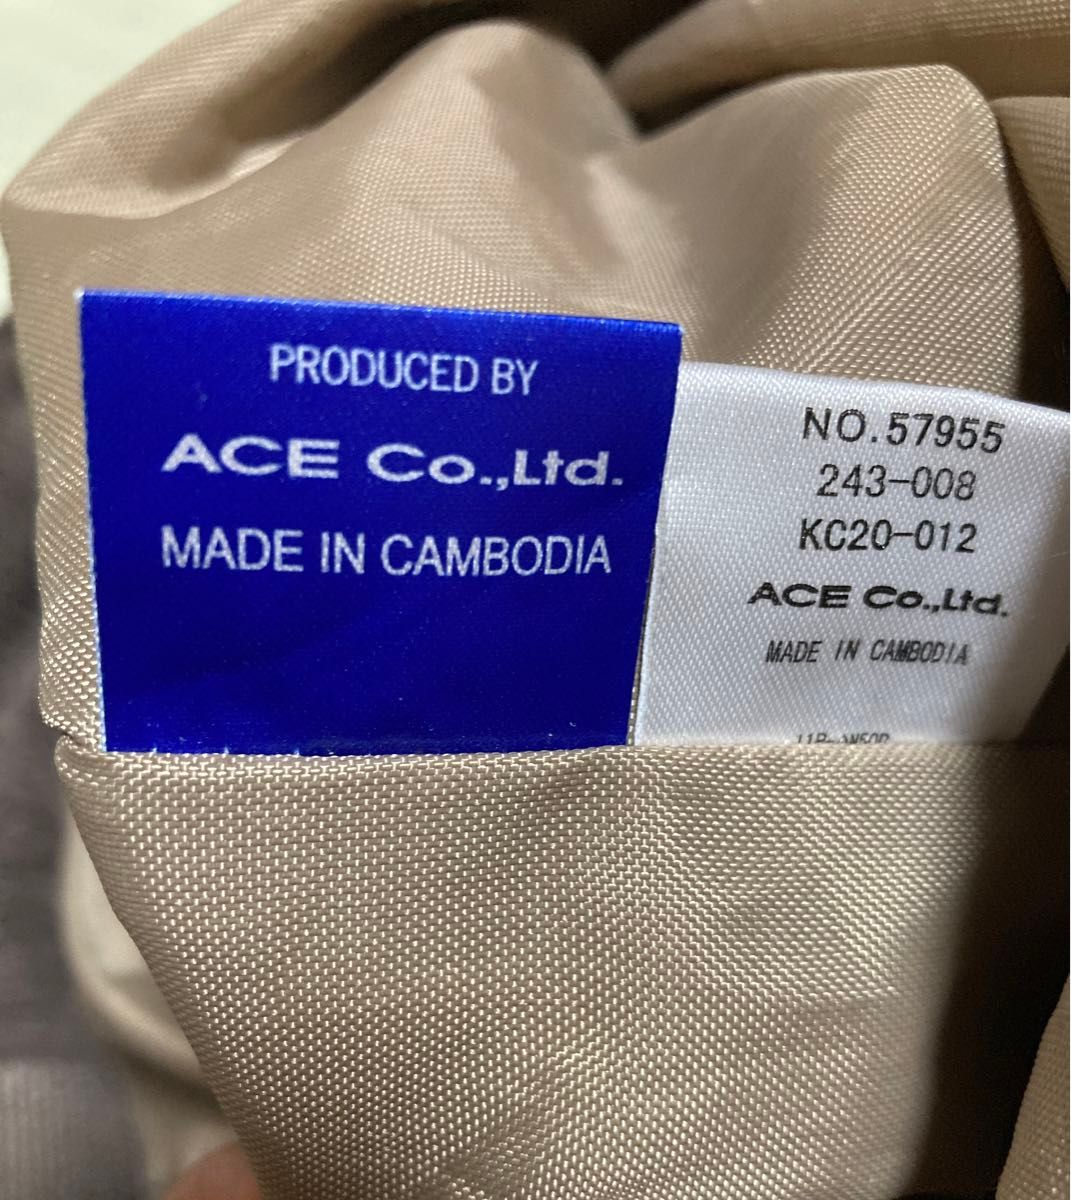 ACE Co.,Ltd. トートバッグ 茶 ブラウン Champion かわいい 巾着 手提げ 肩掛け バック バッグ